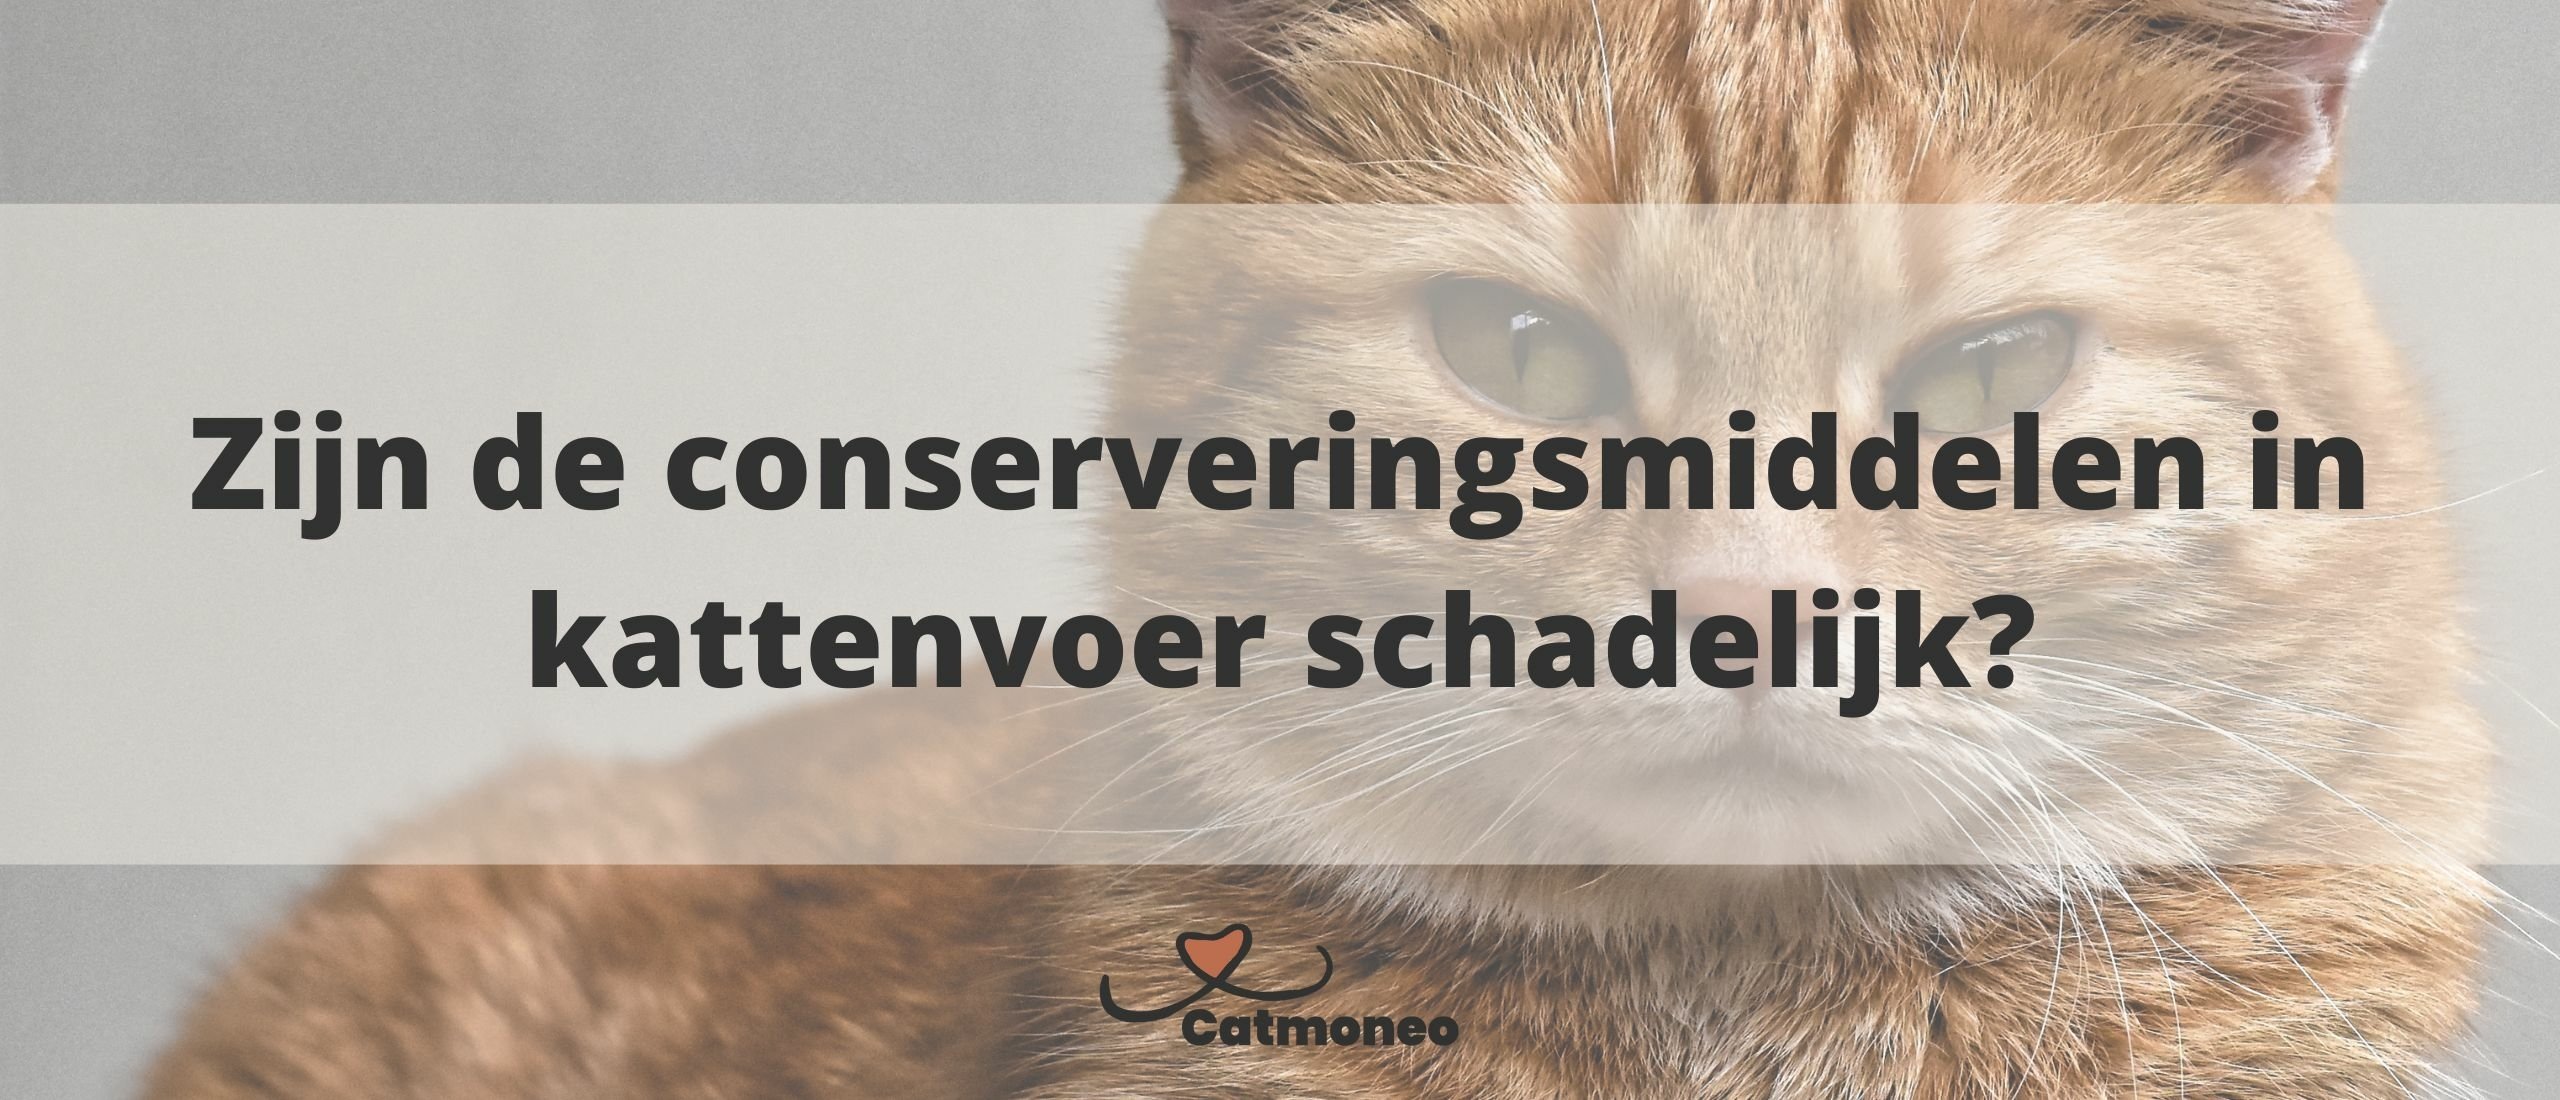 Welke antioxidanten (conserveringsmiddelen) worden in kattenvoer gebruikt en zijn die schadelijk?